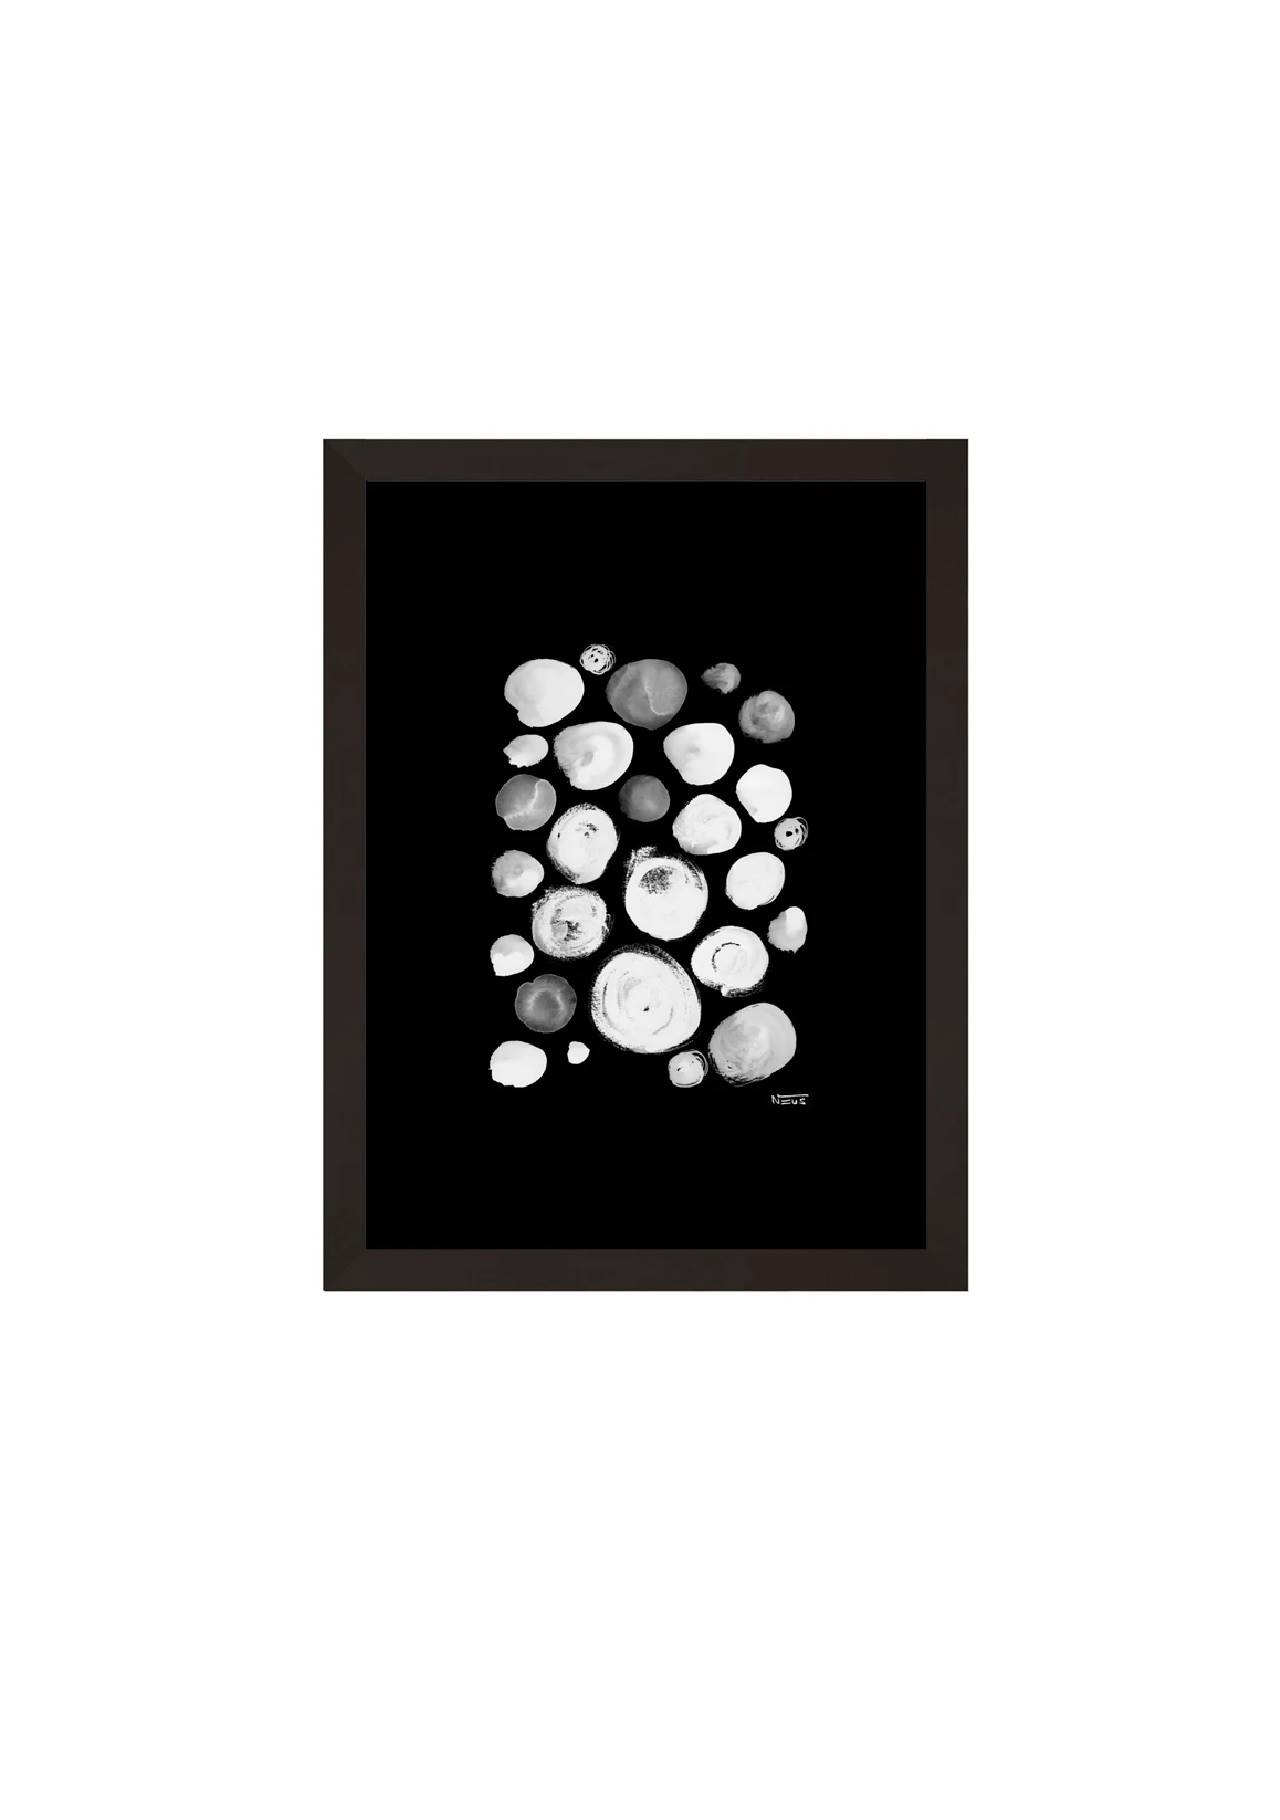 cuadros para baños cuadro en blanco y negro Leroy Merlin, 22,99€